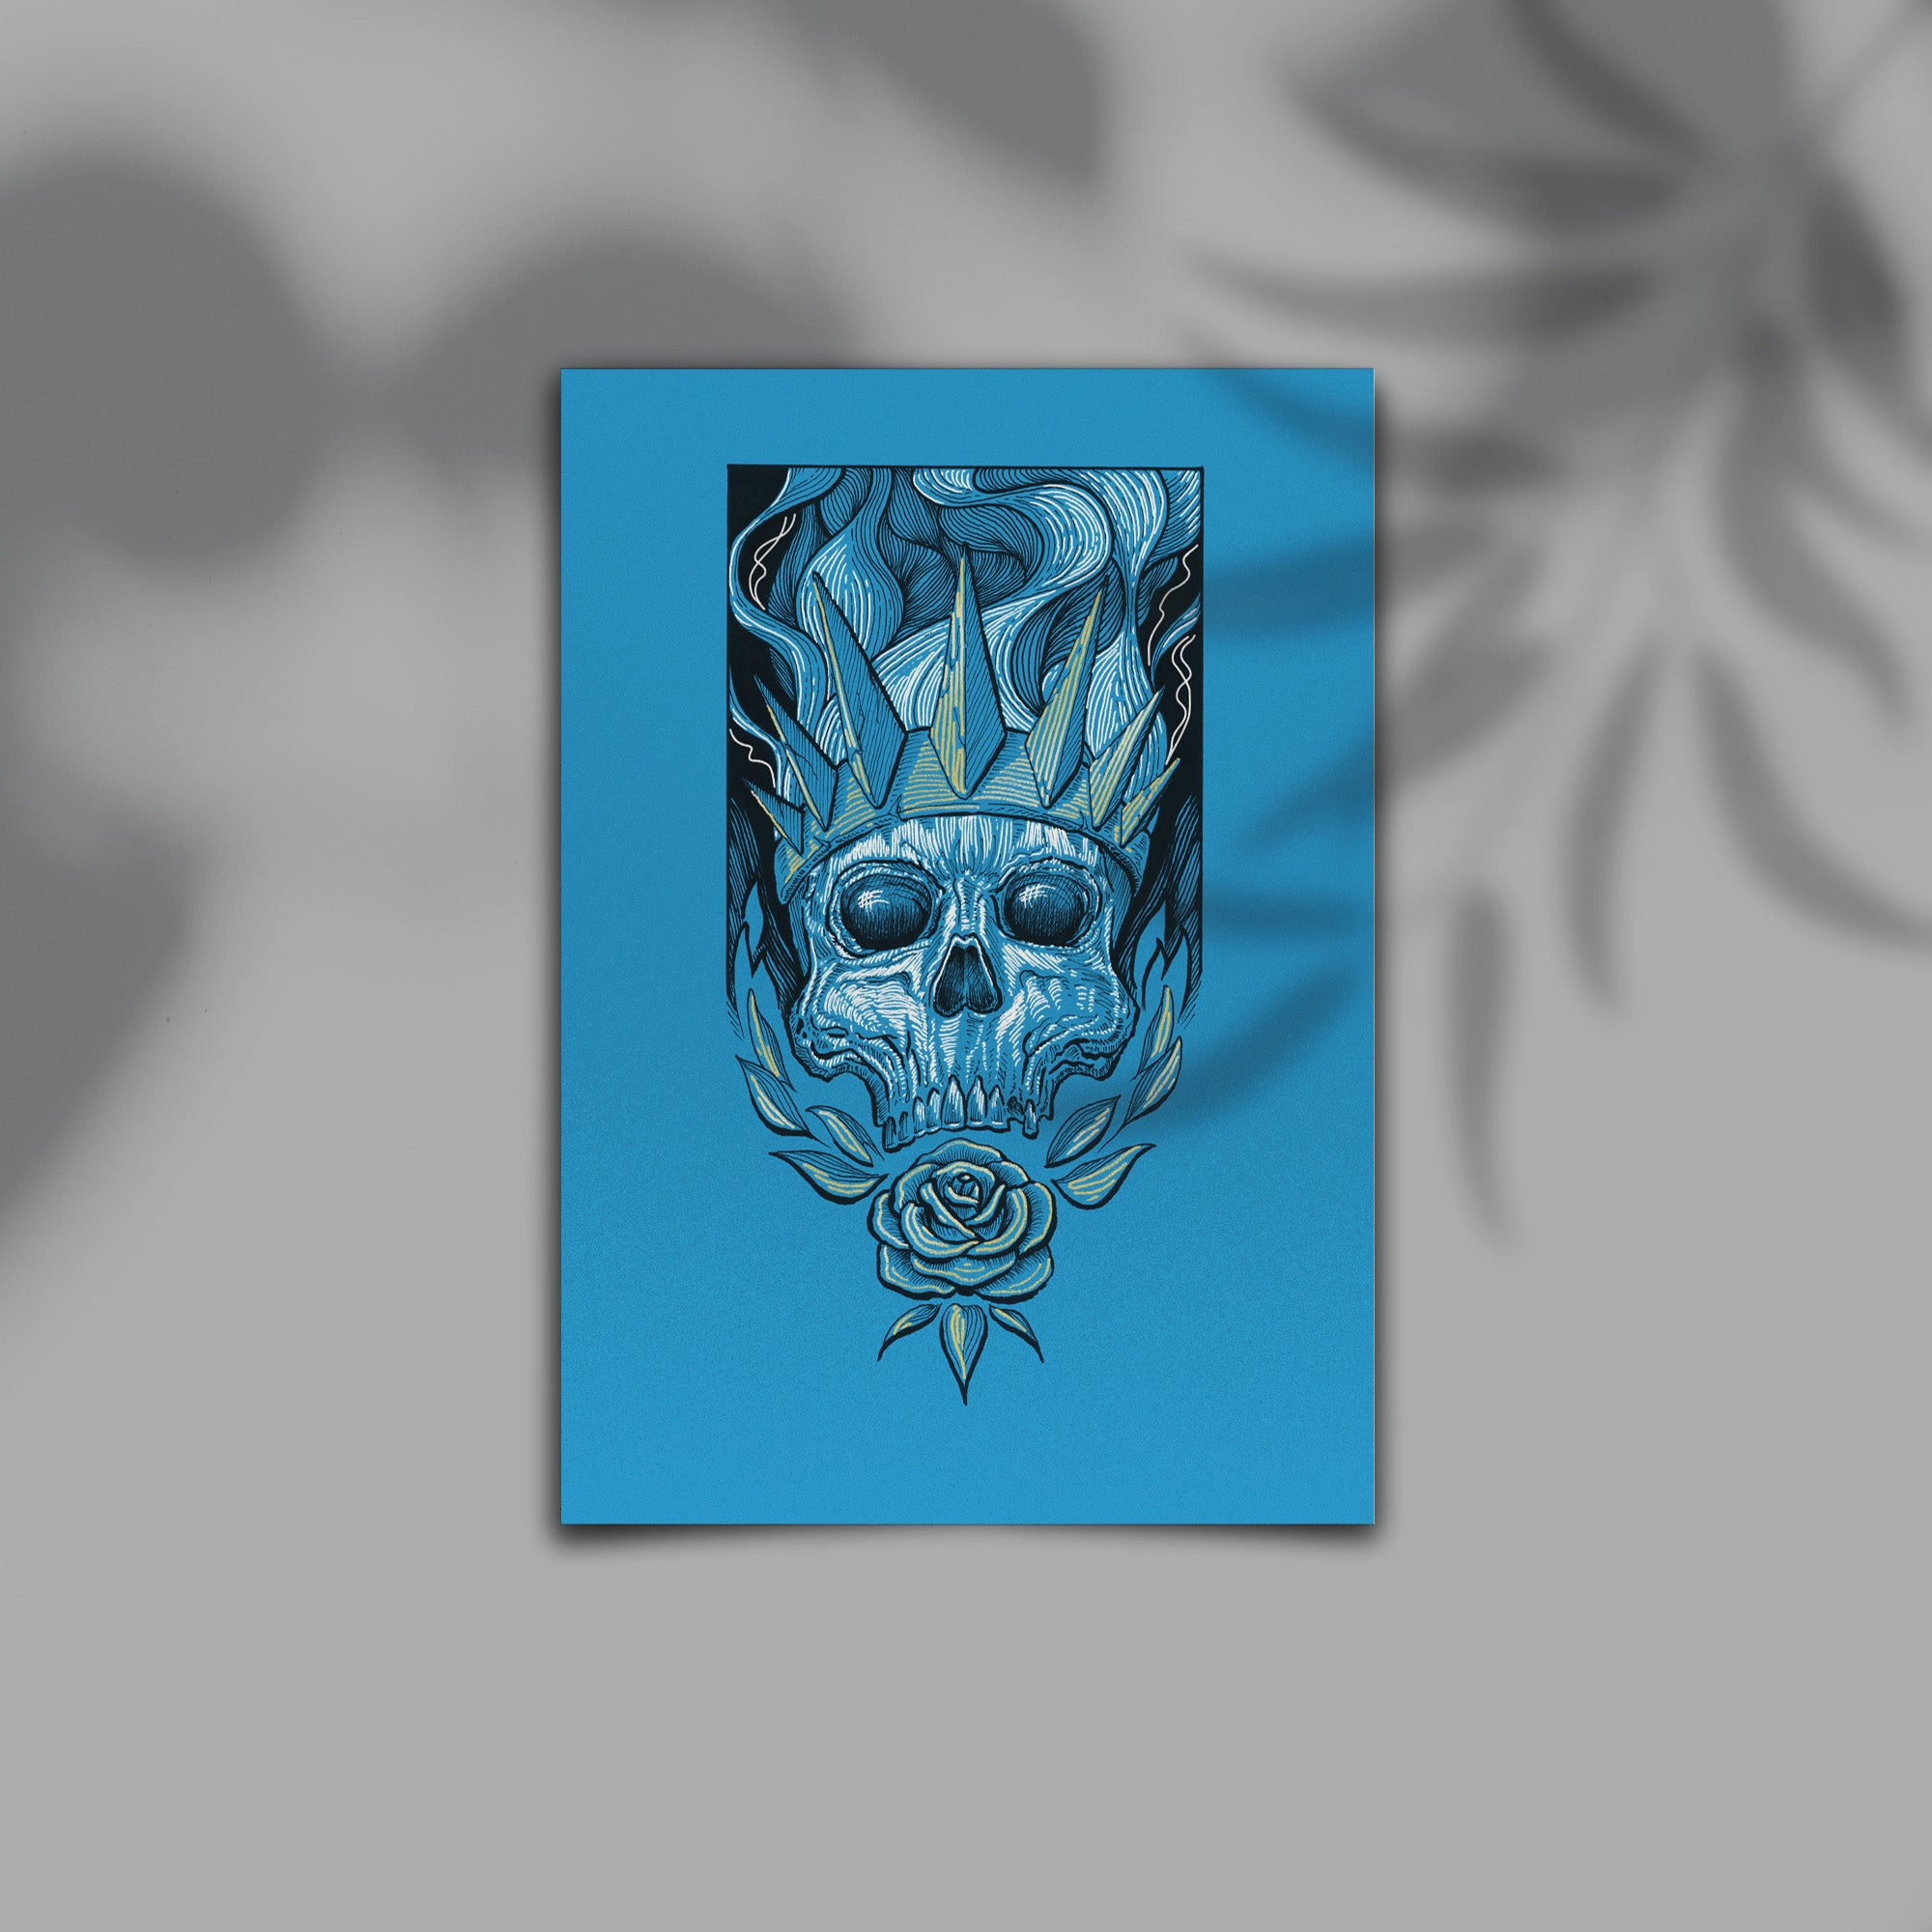 The King Skull Blue